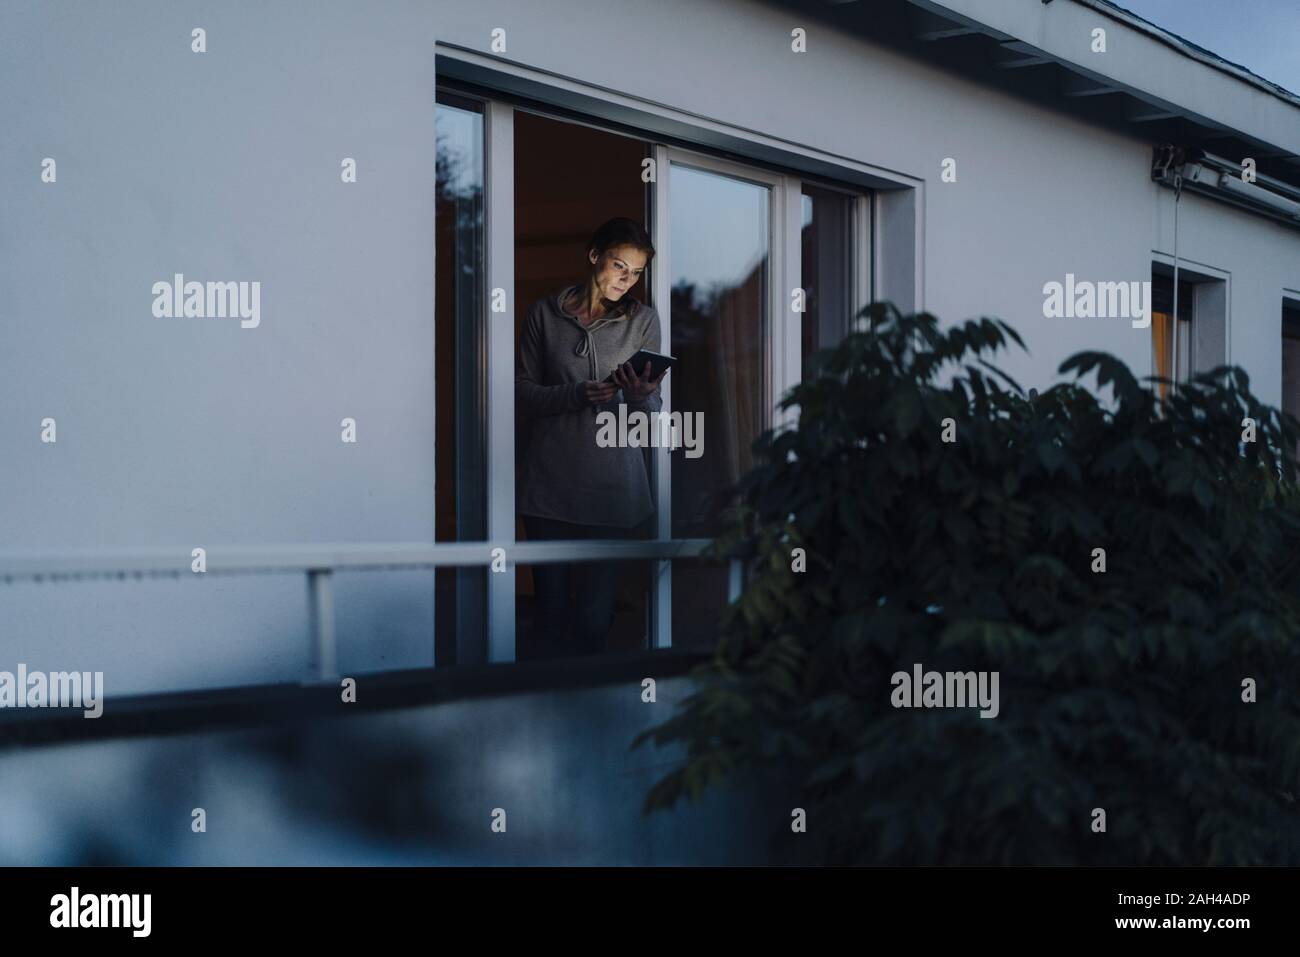 Woman standing in balcony door, using digital tablet Stock Photo